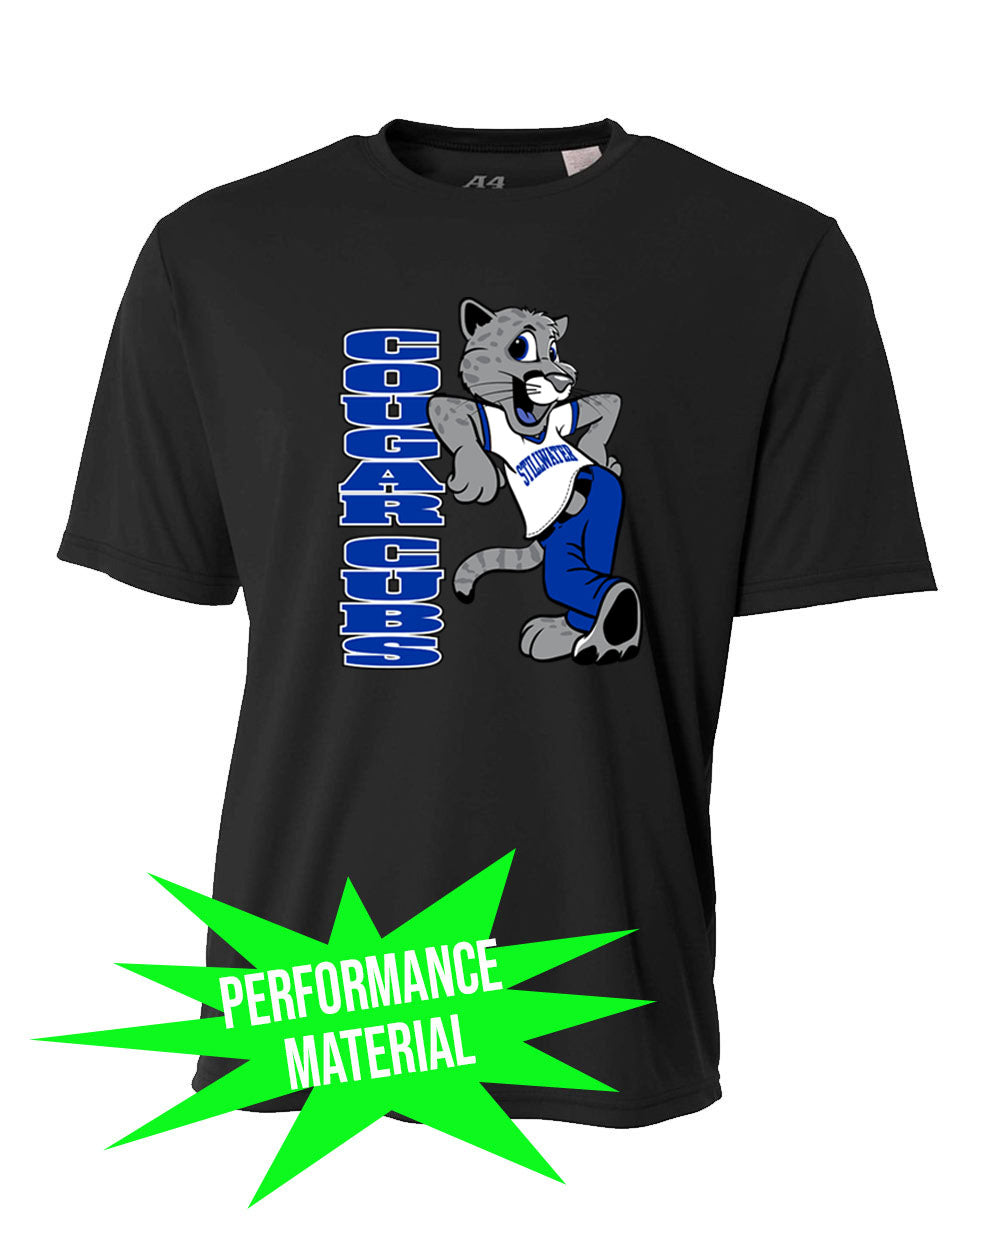 Stillwater Performance Material T-Shirt Design 21